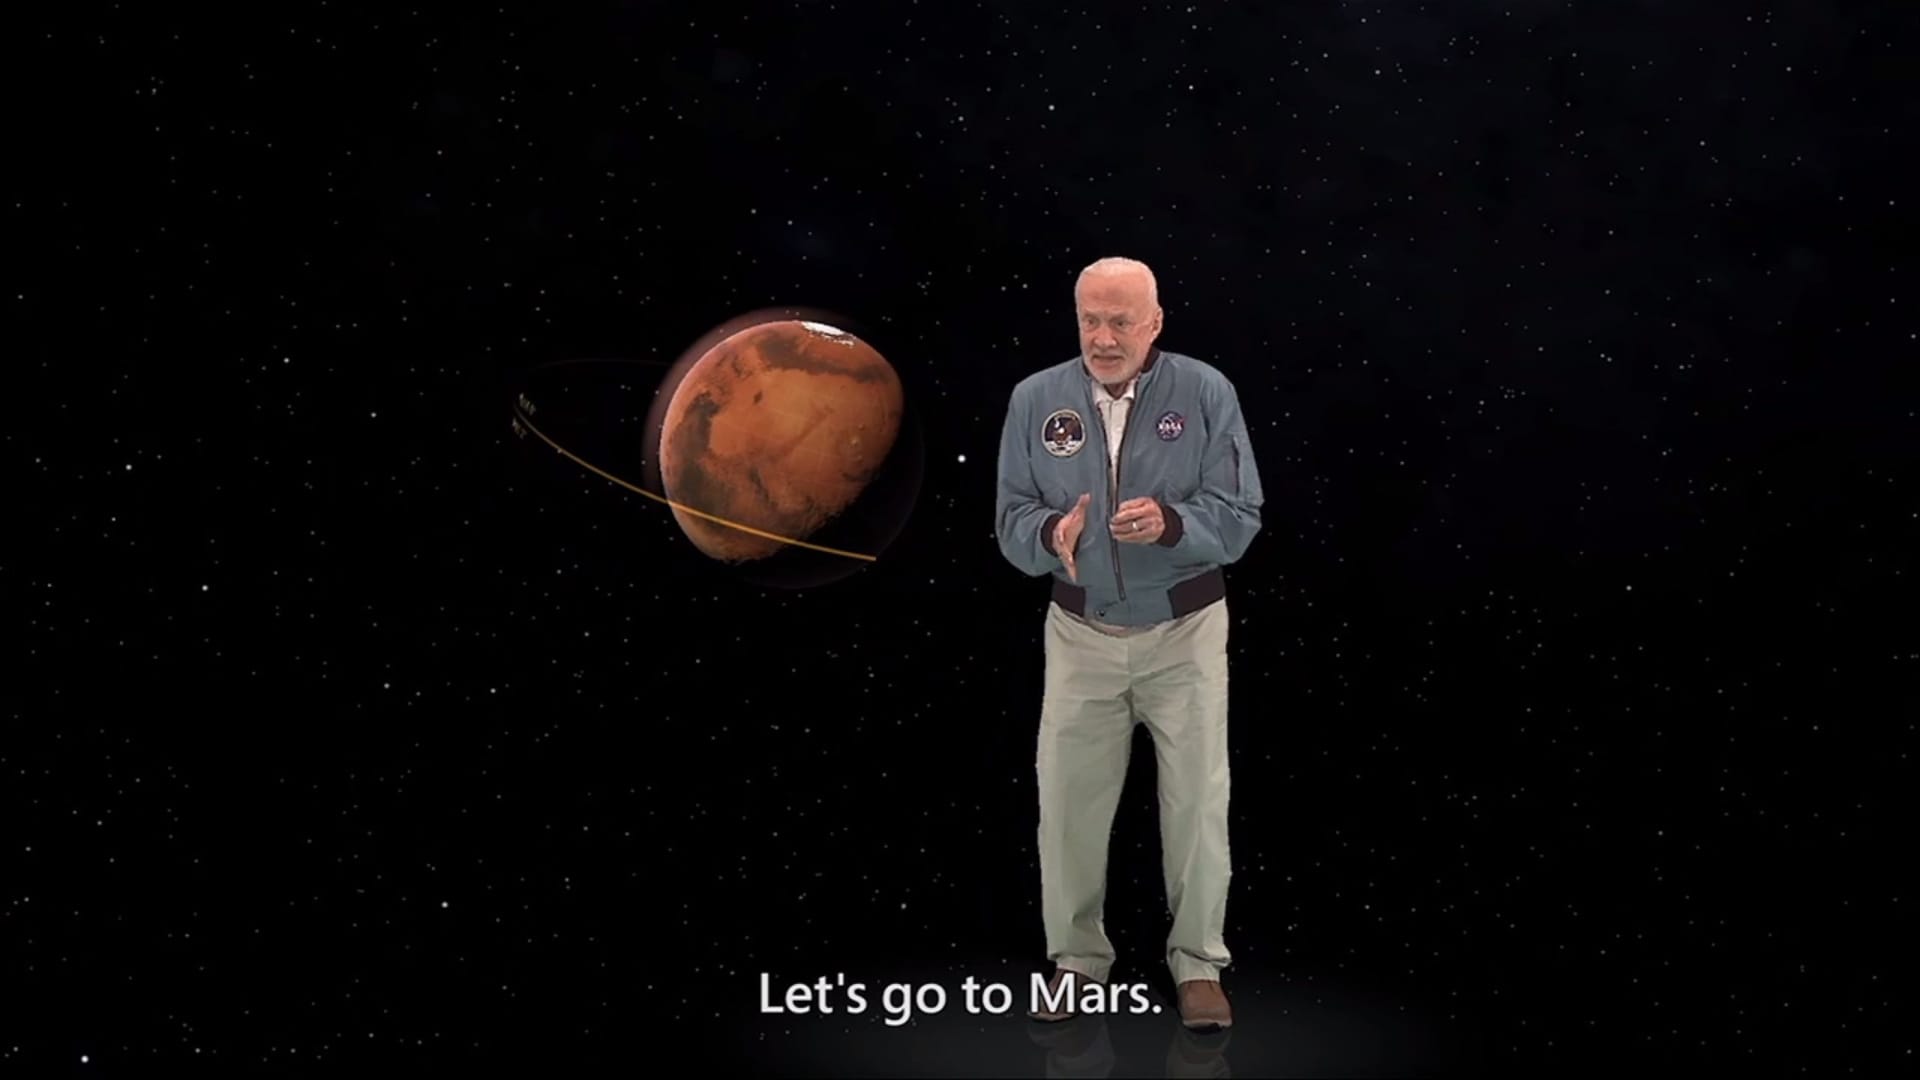 Die NASA hat mit Mission to Mars einen virtuellen Rundgang auf dem Mars erstellt, bei dem ein virtueller Buzz Aldrin als Tourguide den Träger der HoloLense-Brille führt.